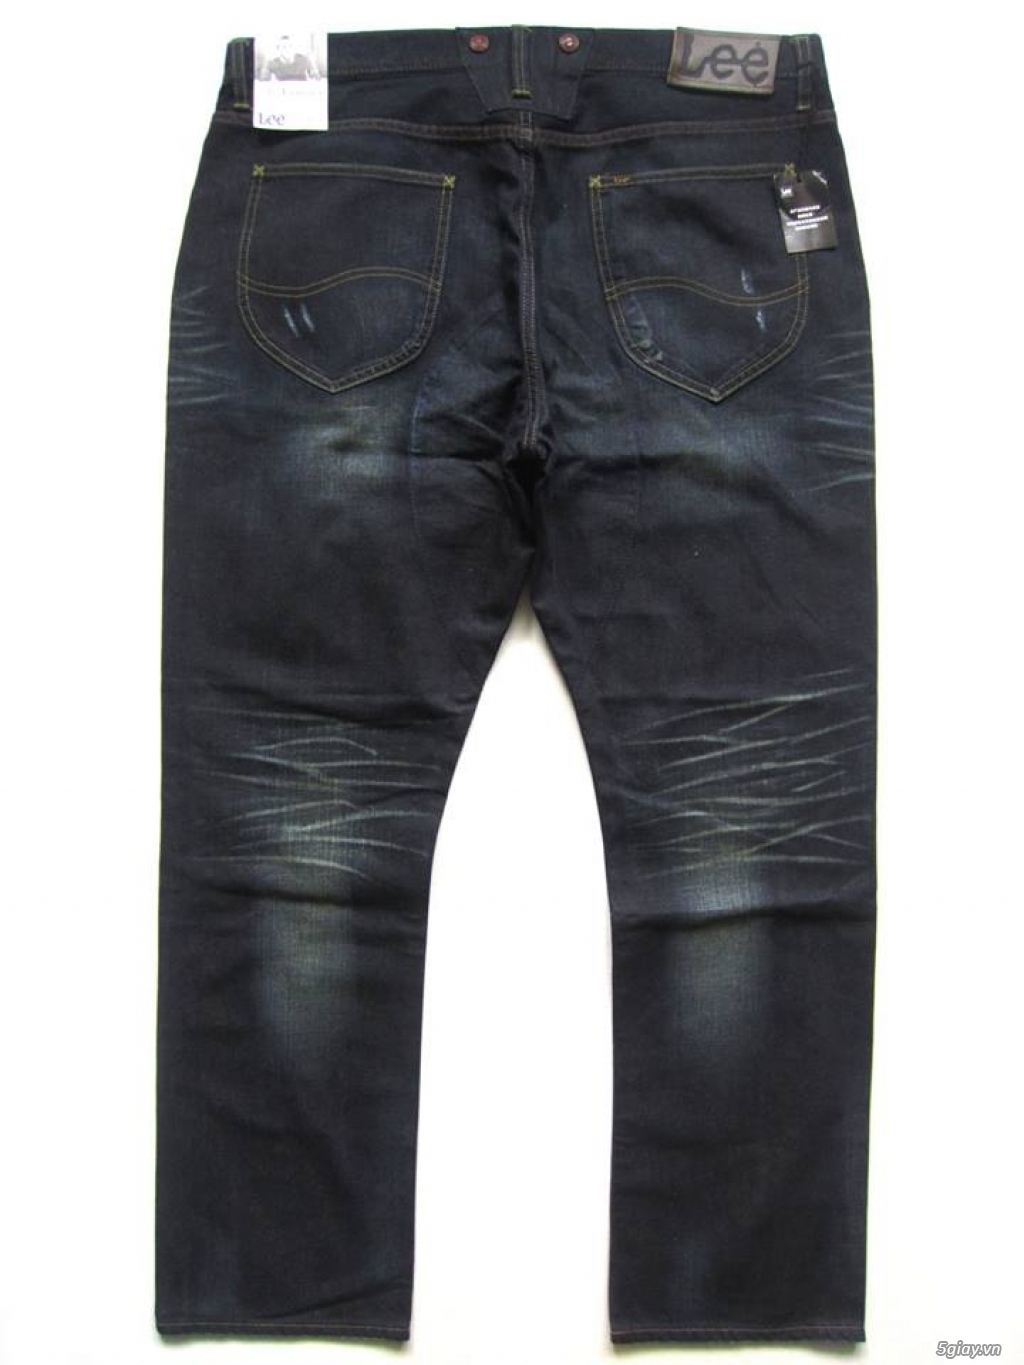 Quần Jeans Nam hiệu Lee chính hãng giá siêu hot - 1